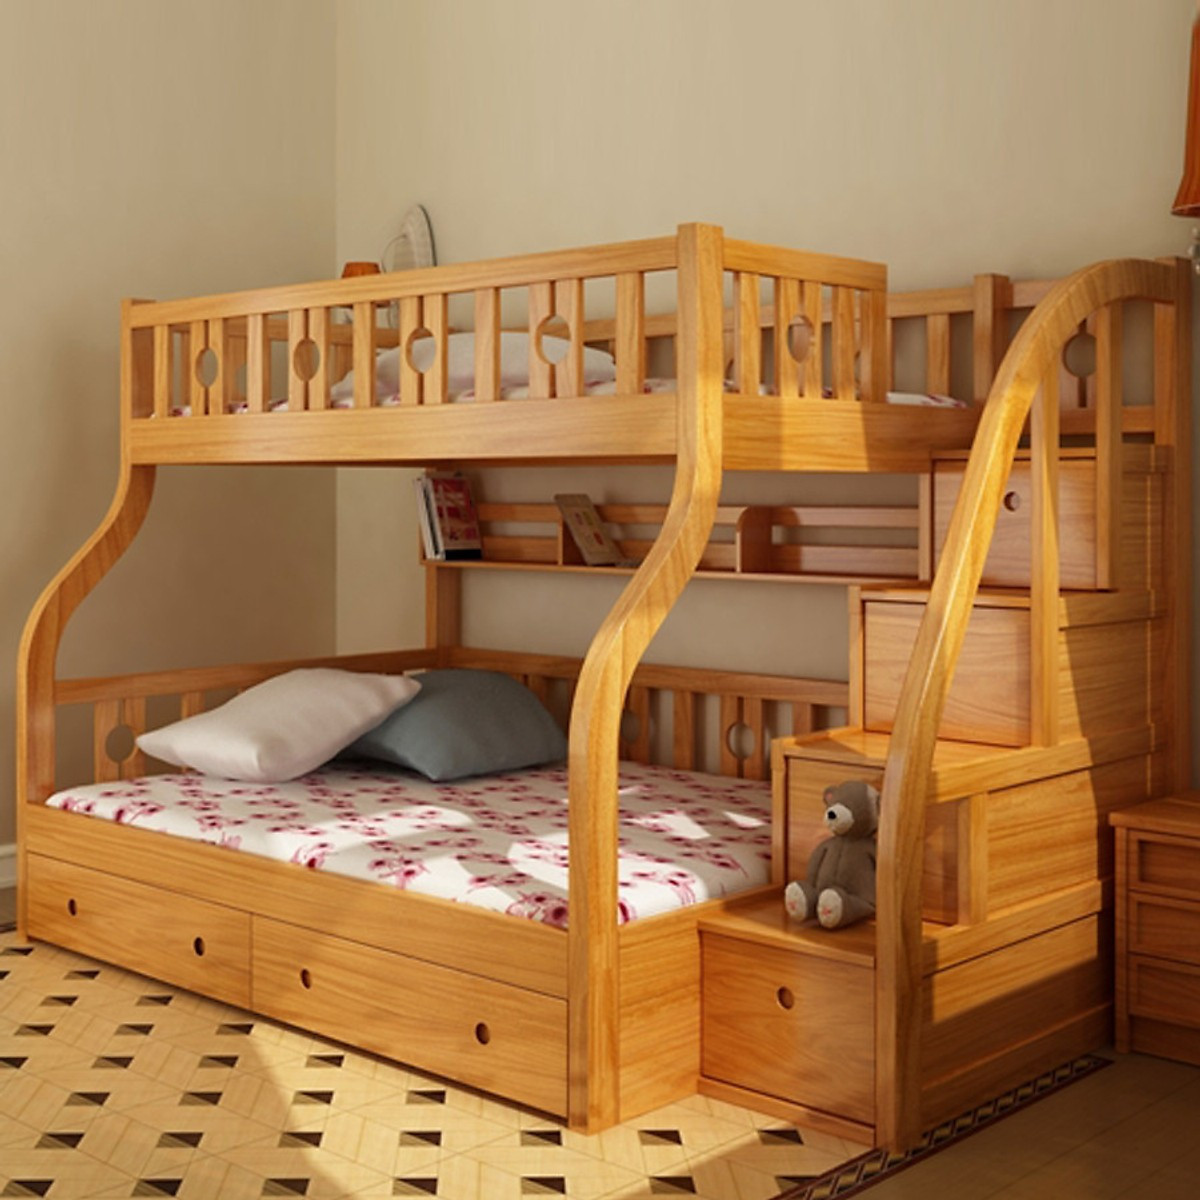 Chọn giường tầng cho trẻ với thiết kế cầu thang và tay vịn vững chắc tránh trường hợp té ngã